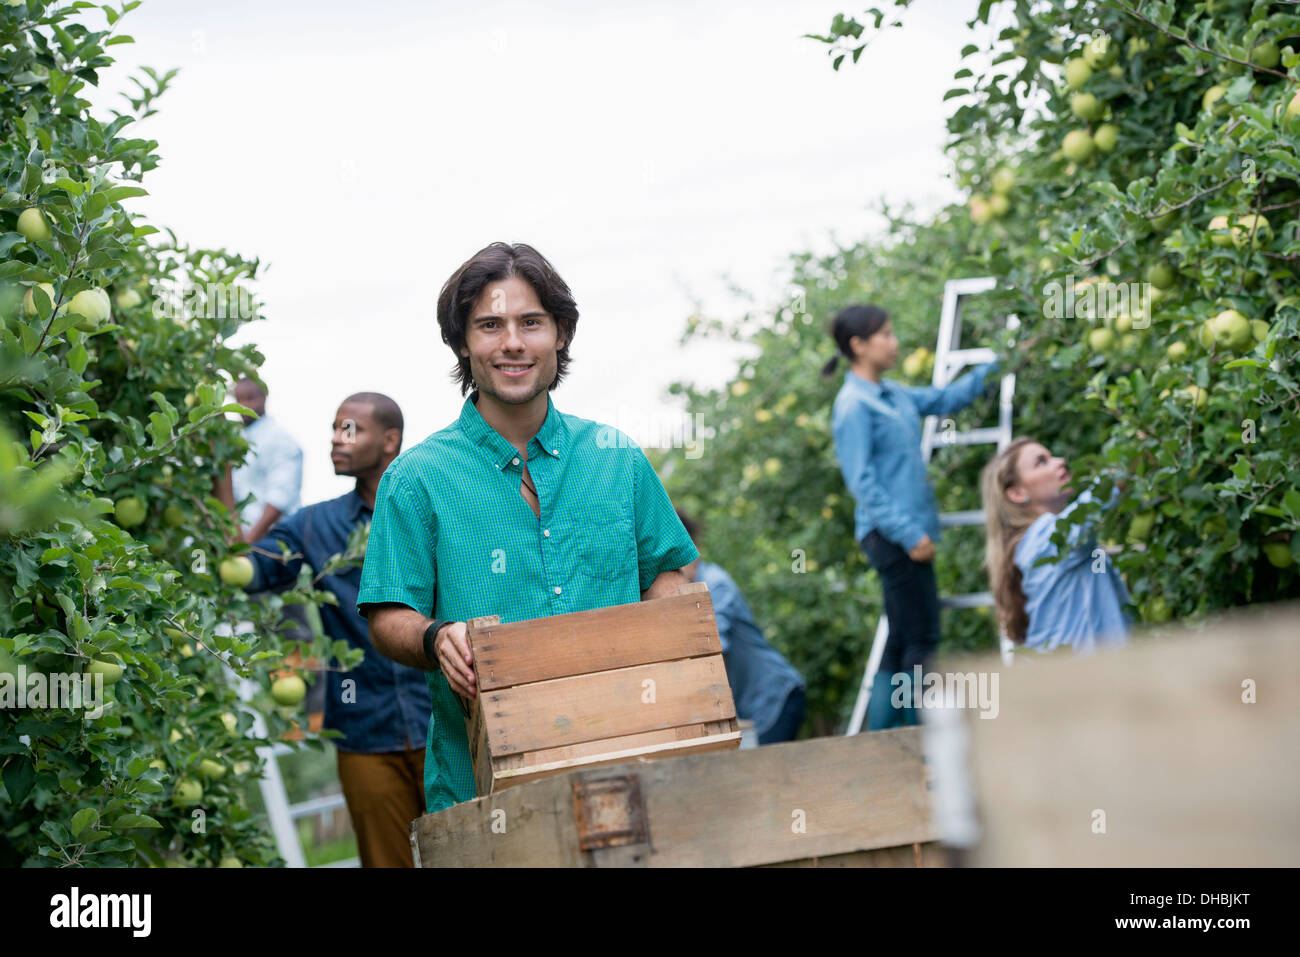 Einem organischen Obstgarten auf einem Bauernhof. Eine Gruppe von Menschen, die grüne Äpfel von den Bäumen pflücken. Stockfoto